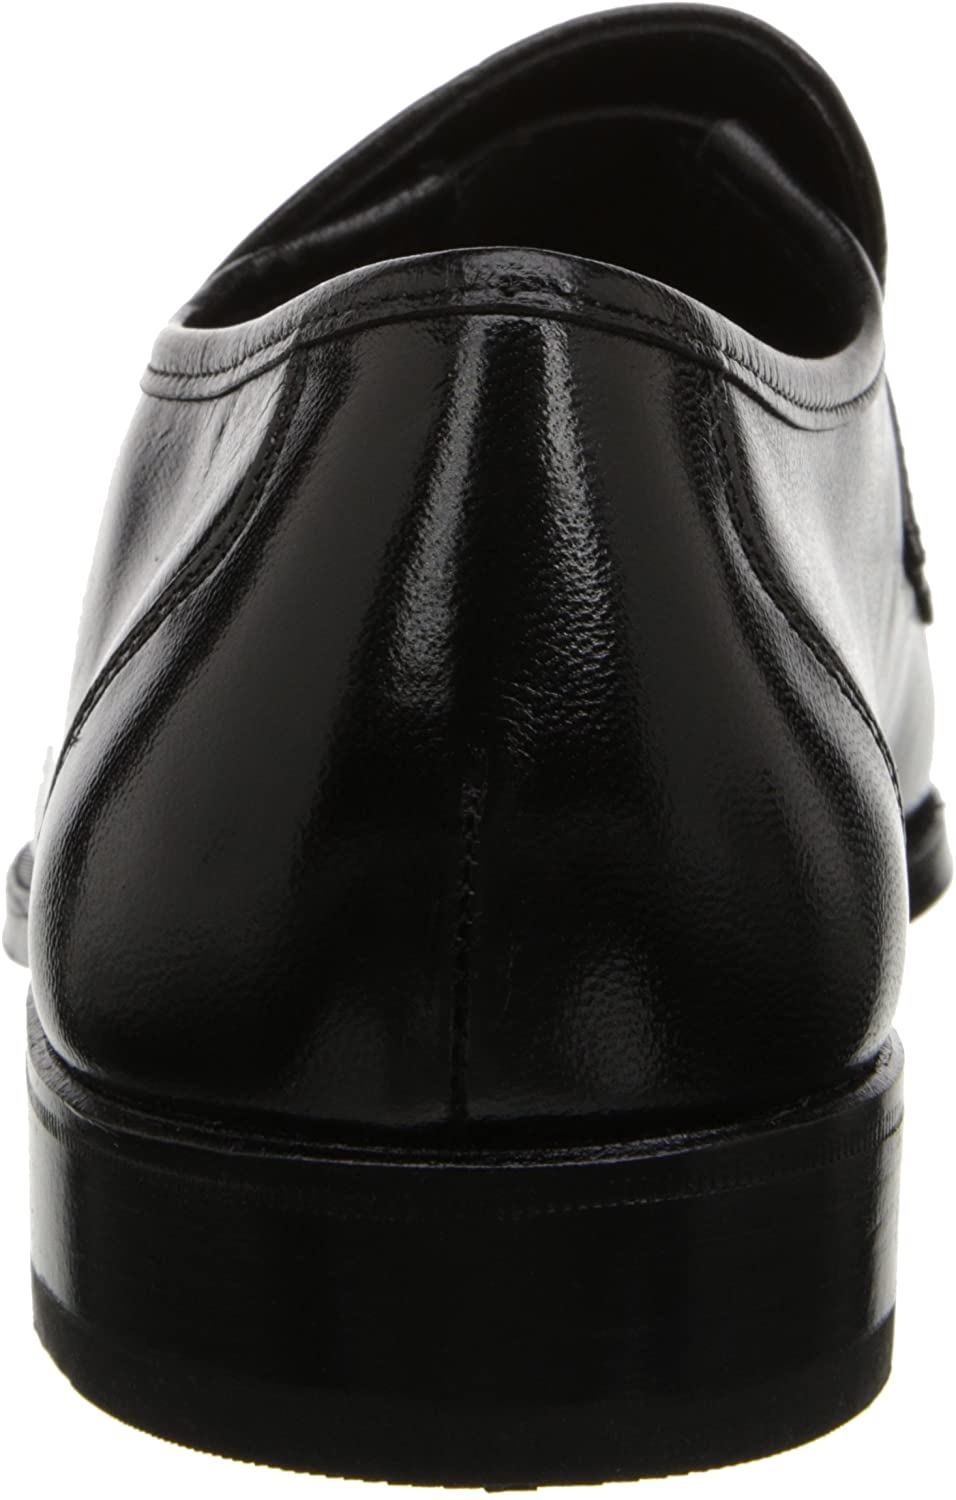 Men's Shoes Florsheim Como Black Leather loafer 17089-01 - image 3 of 7